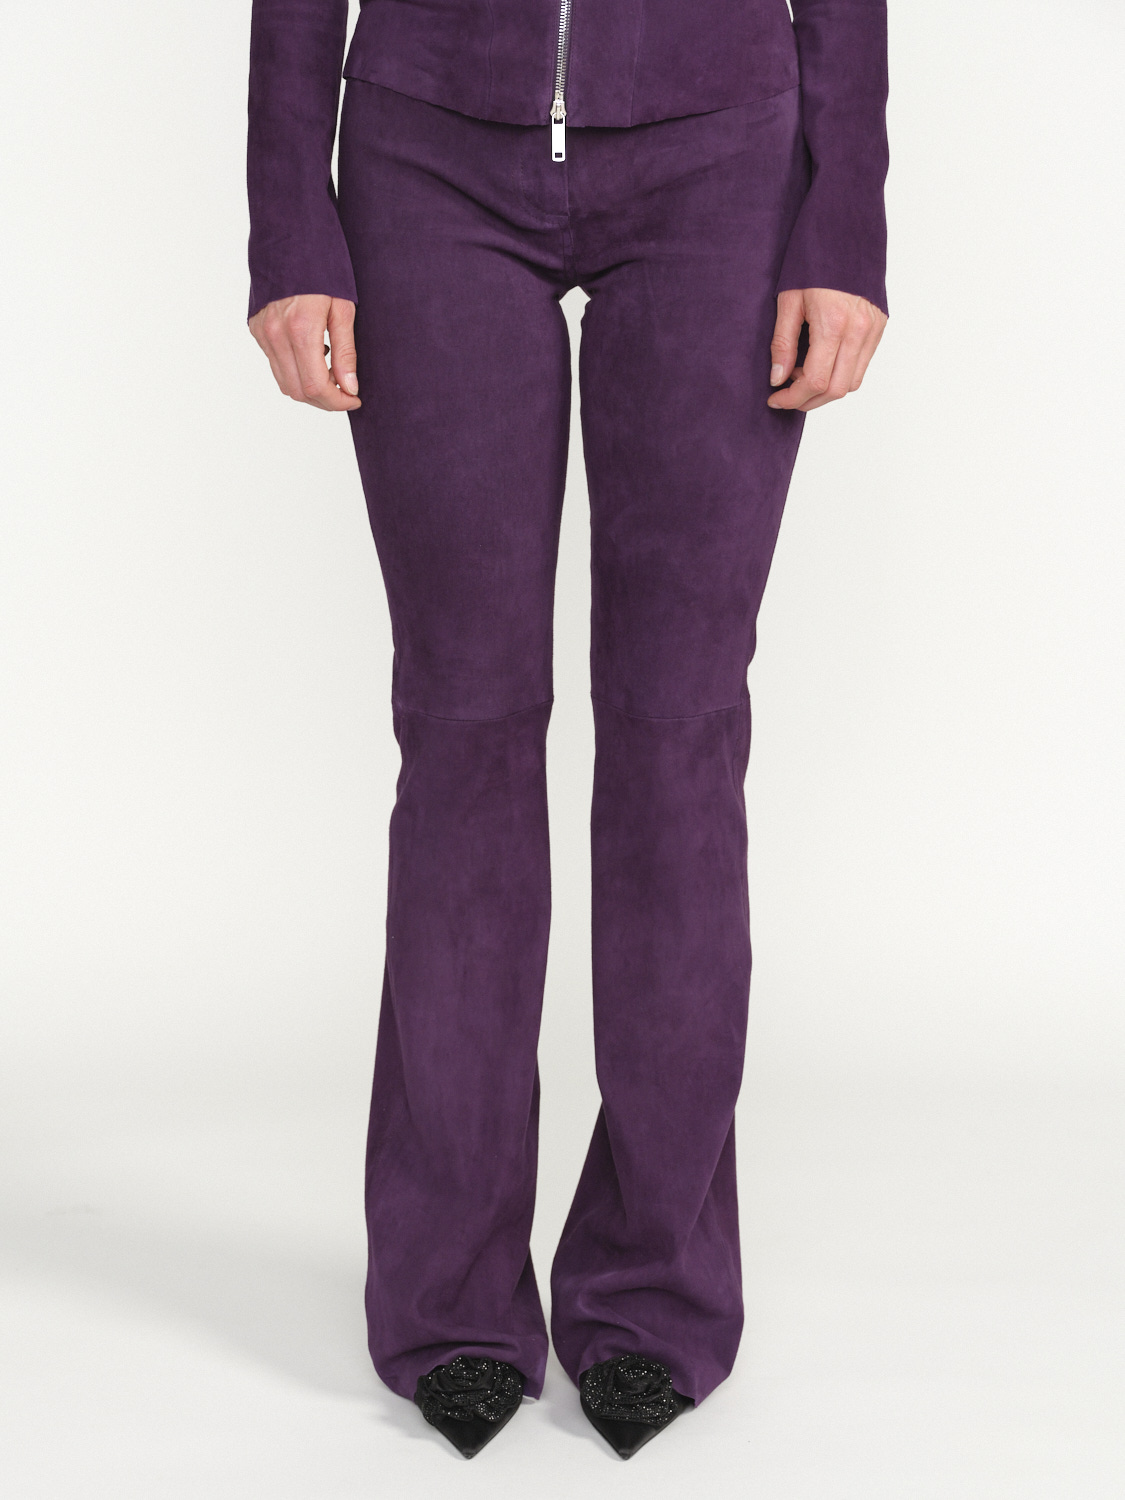 jitrois Pantalon Pika - Pantalon de bootcut en daim violet 38